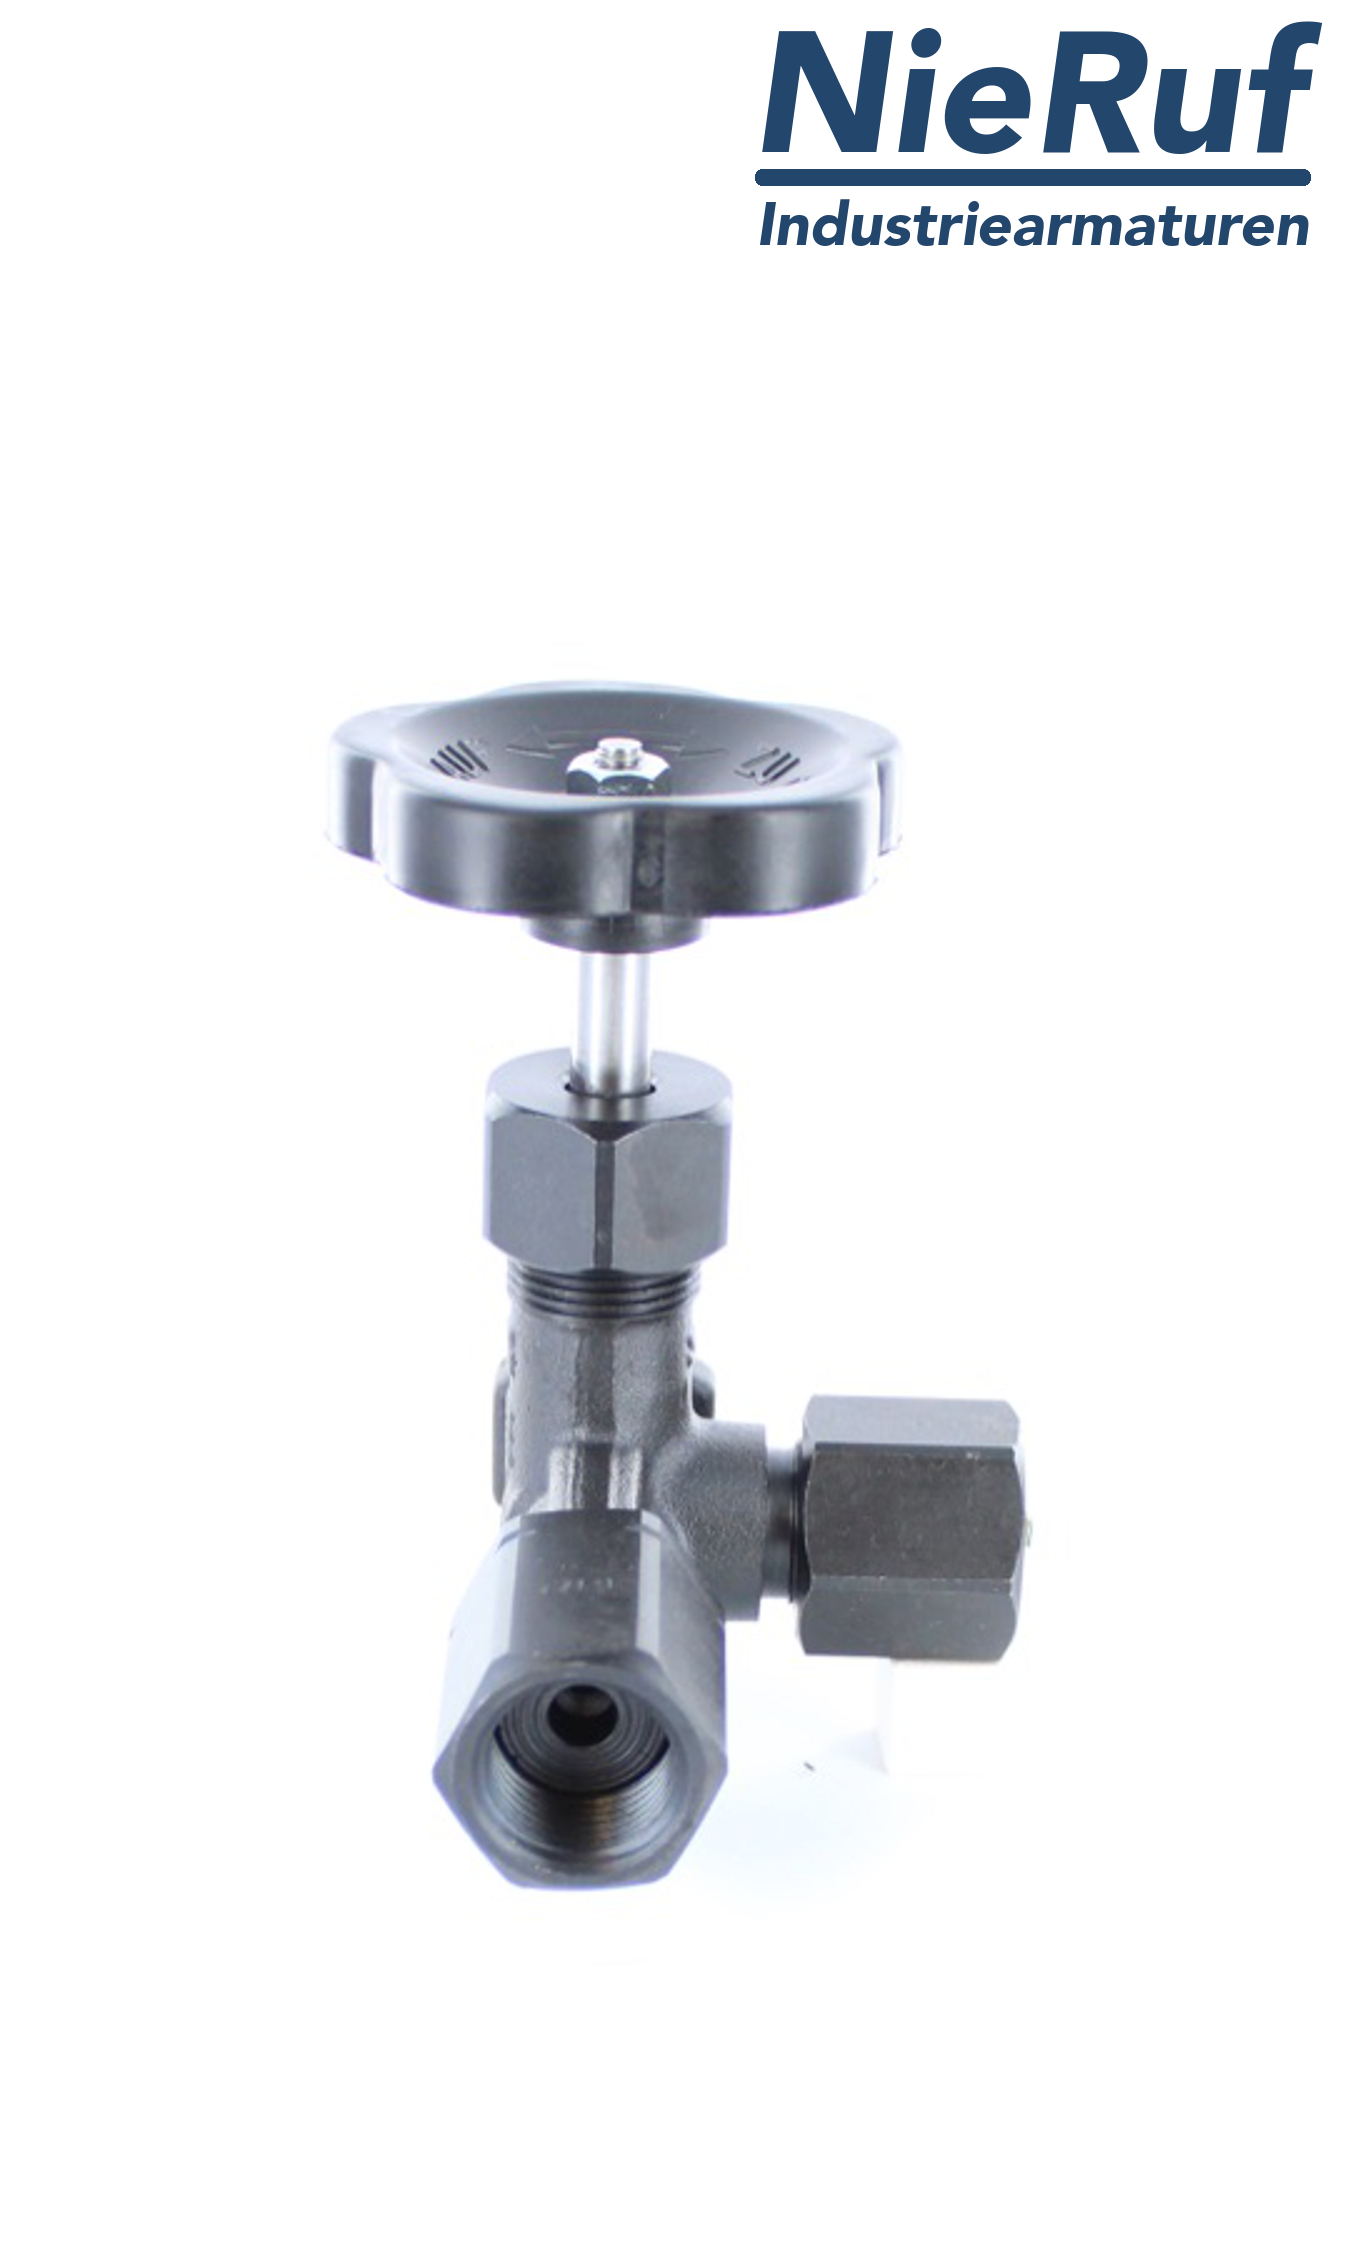 vanne d'arrêt pour manomètre manchon (filetage mâle) x adaptateur pour instruments de mesure avec écrou réglable M20X1.5 DIN 16271 acier 1.0460 400 bar